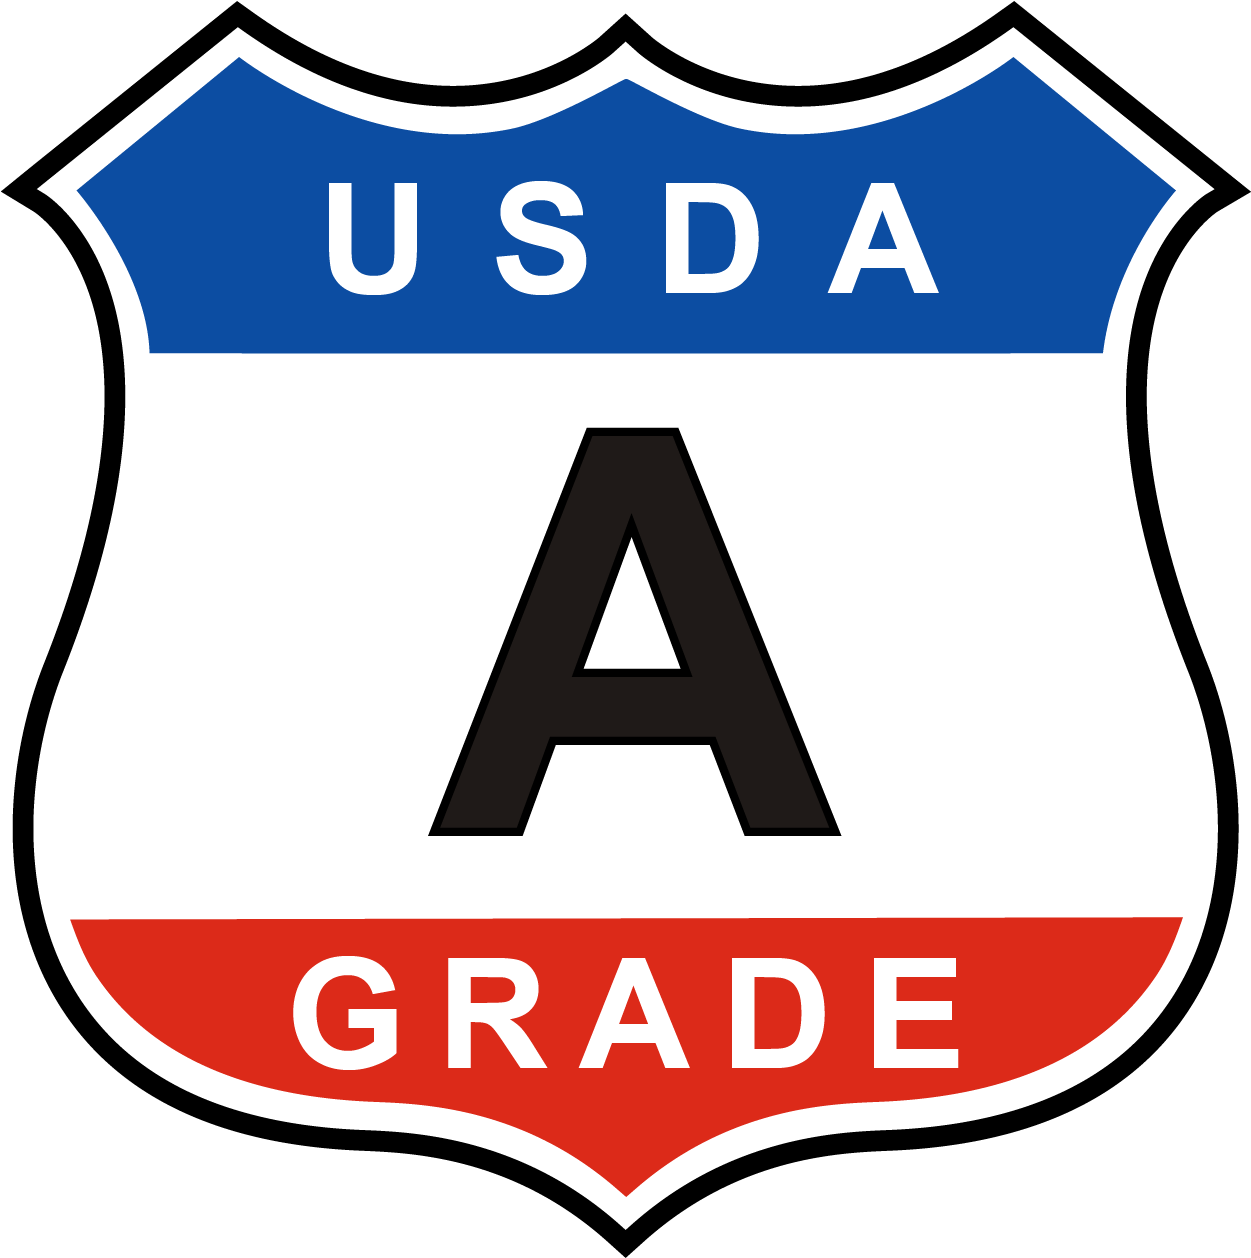 Usda Grade A Shield - Usda Grade A Egg (1307x1301)